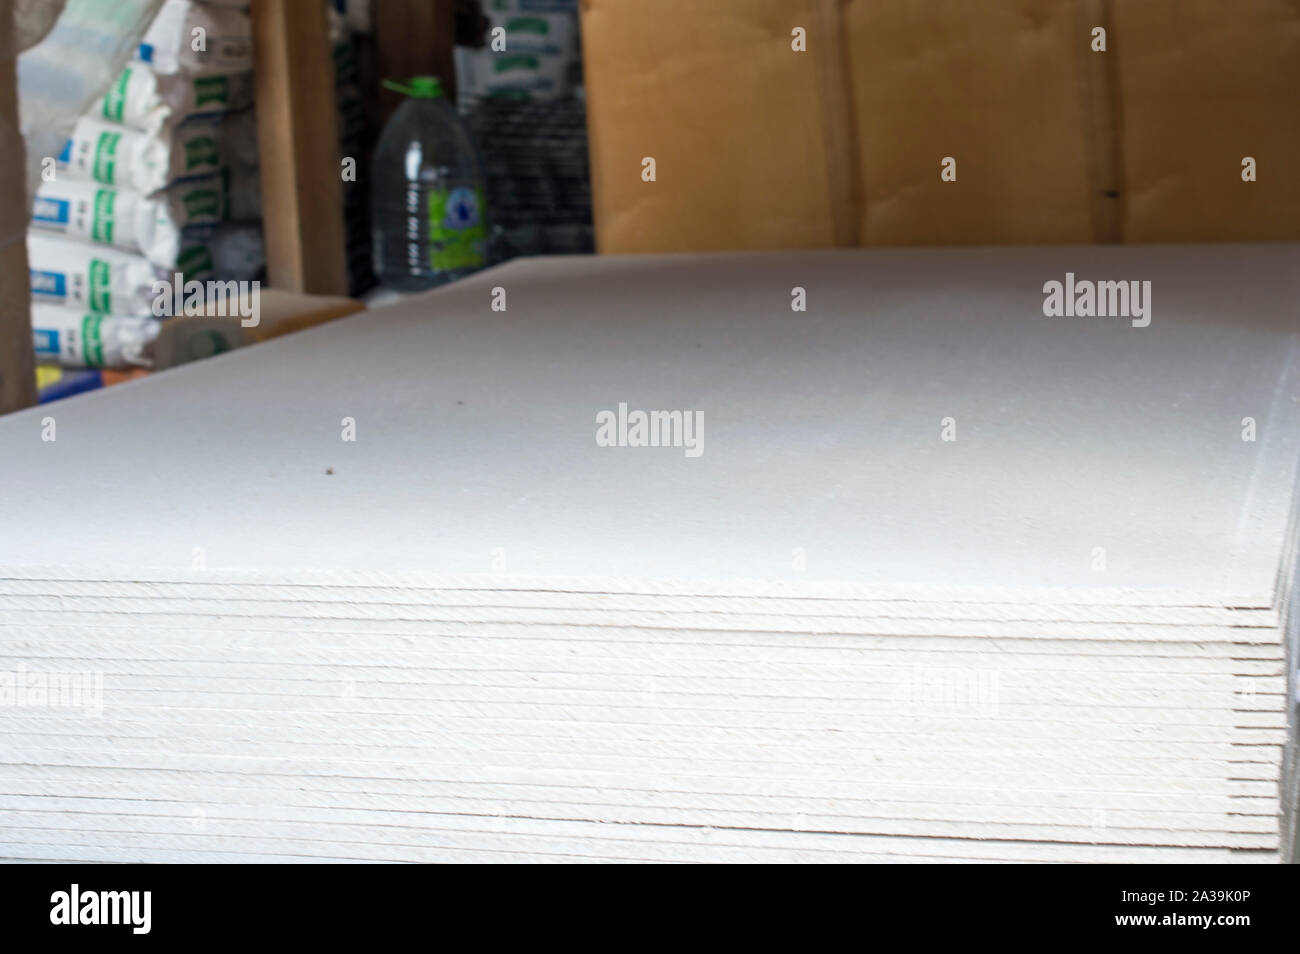 Drywall Sheets, sind sofort lieferbar, die für den Verkauf an die Öffentlichkeit. In der Nähe befinden sich Gips Faser Blätter. Russland Stockfoto